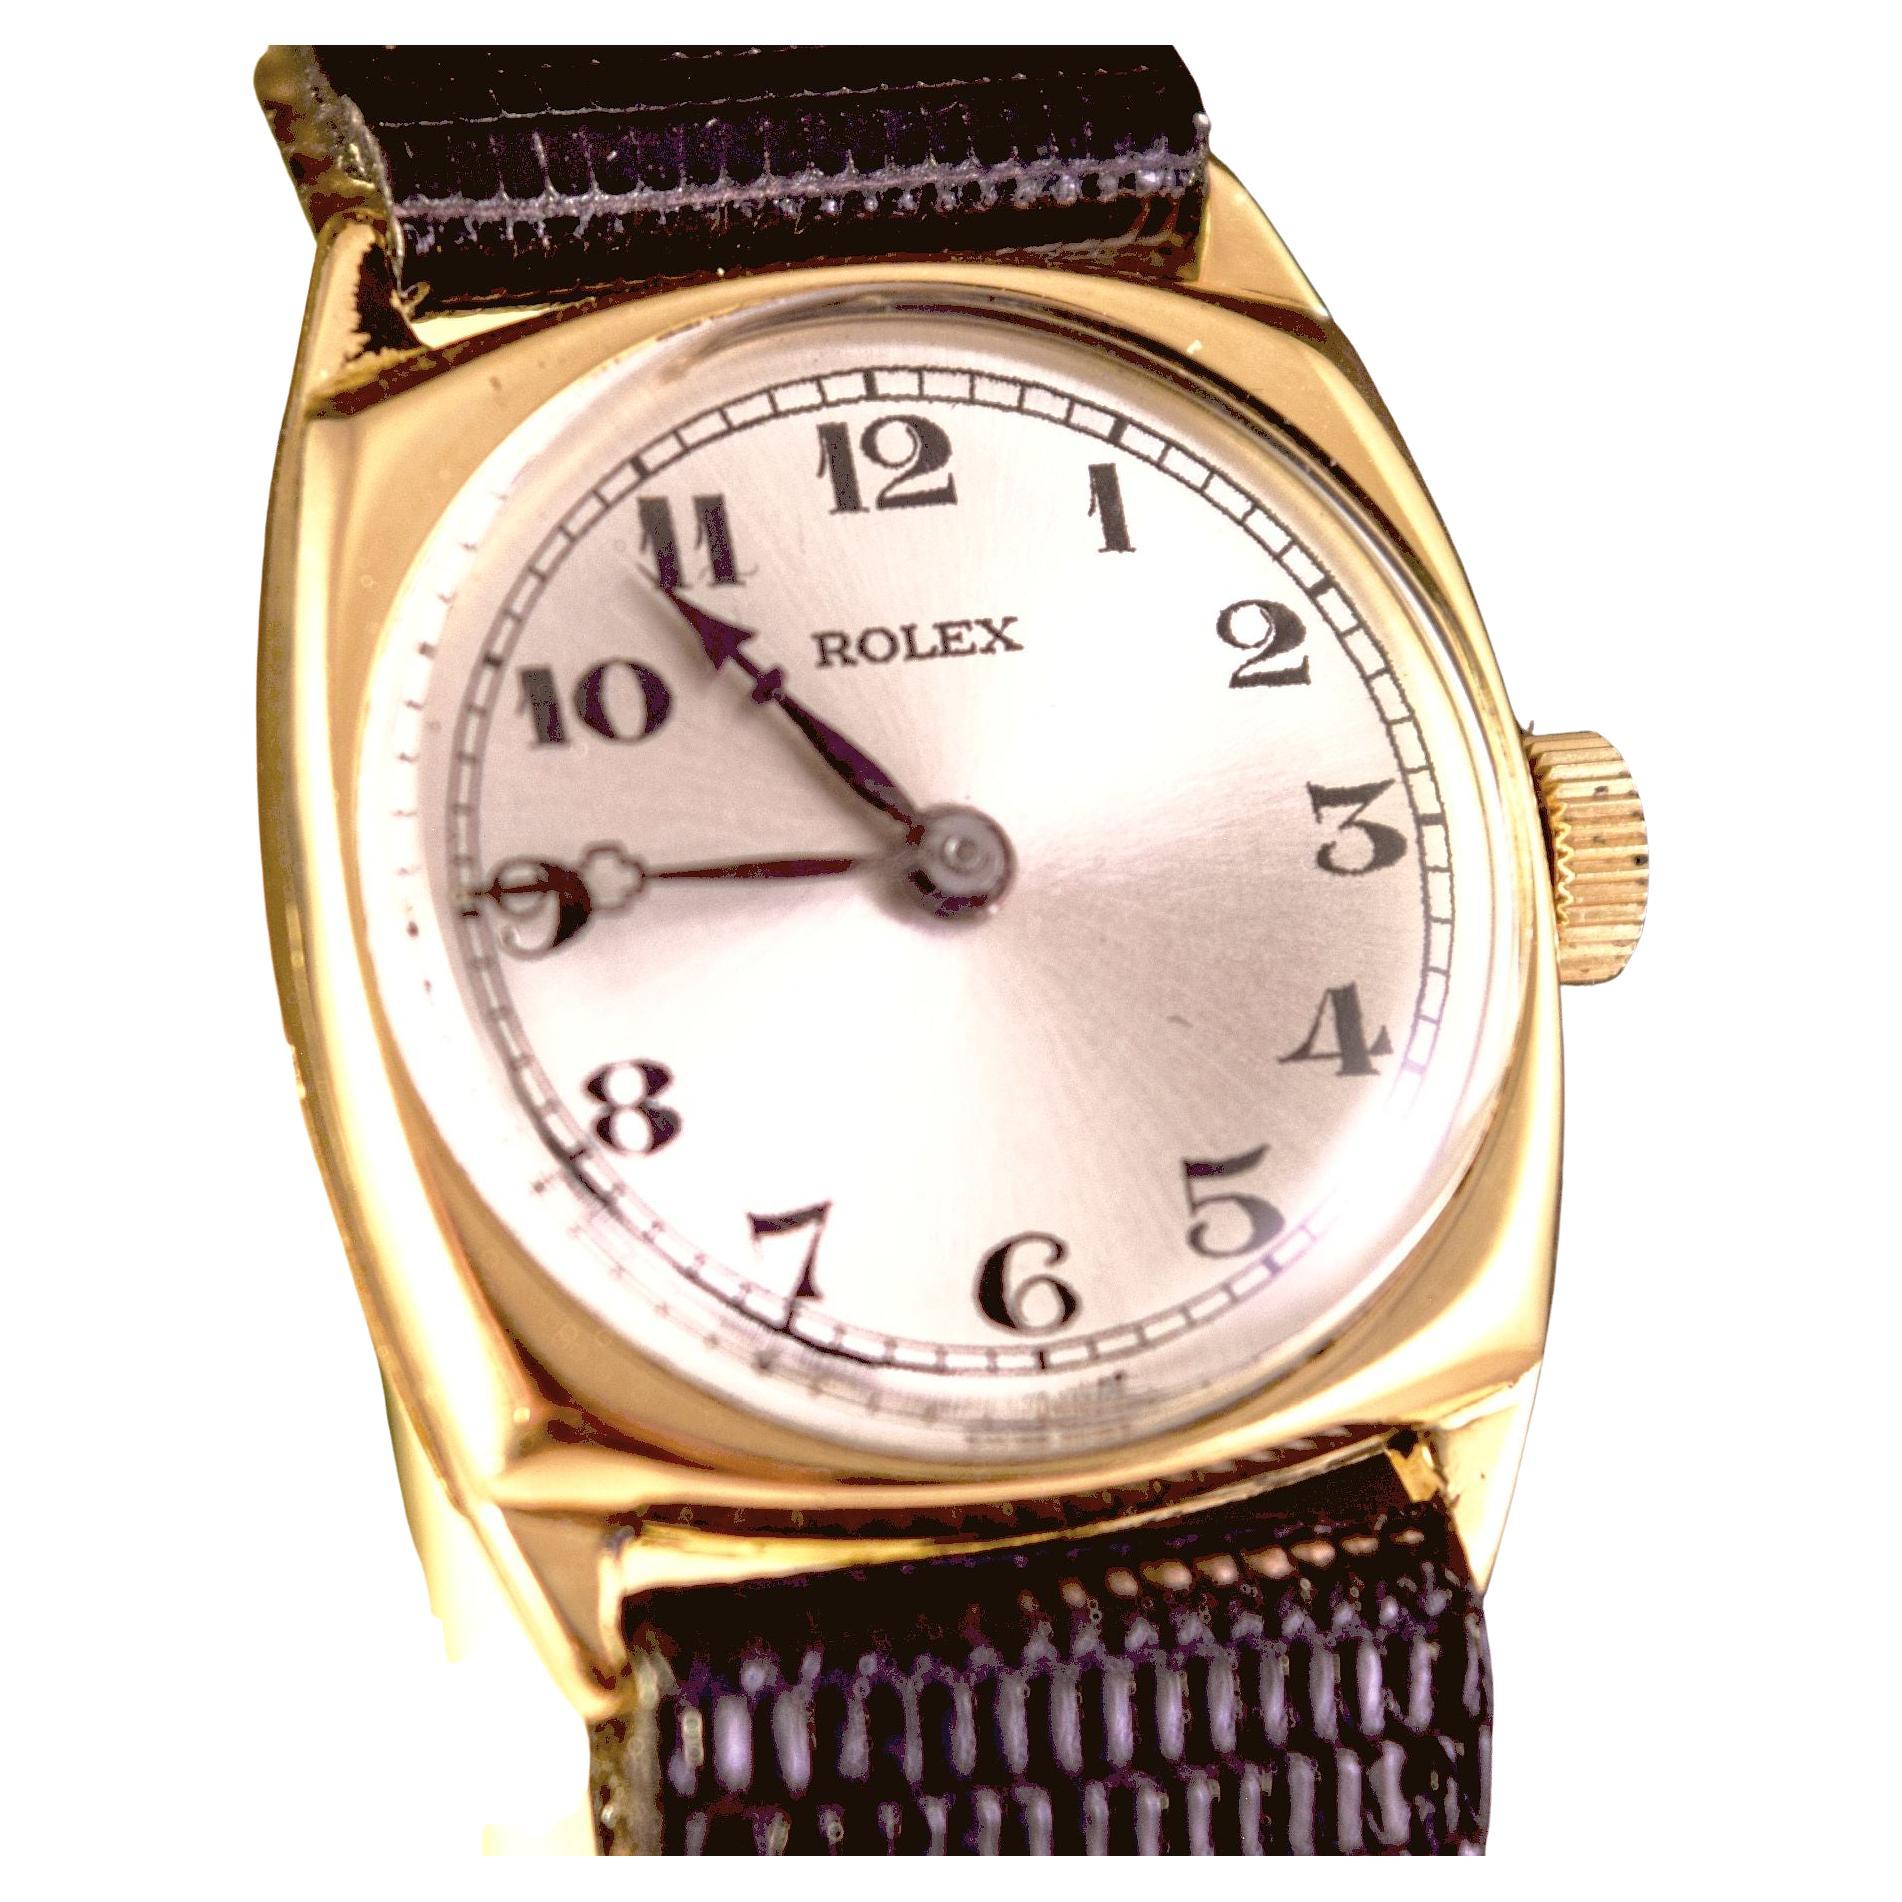 Rolex Vintage rare Cushion shape 18 K gold.1930's
Il s'agit d'une belle et rare montre de forme coussin dans un boîtier en or massif 18 K.
Lames fixes massives en 18 K.
Le cadran est signé Rolex en chiffres noirs.
Aiguilles attrayantes et rares en